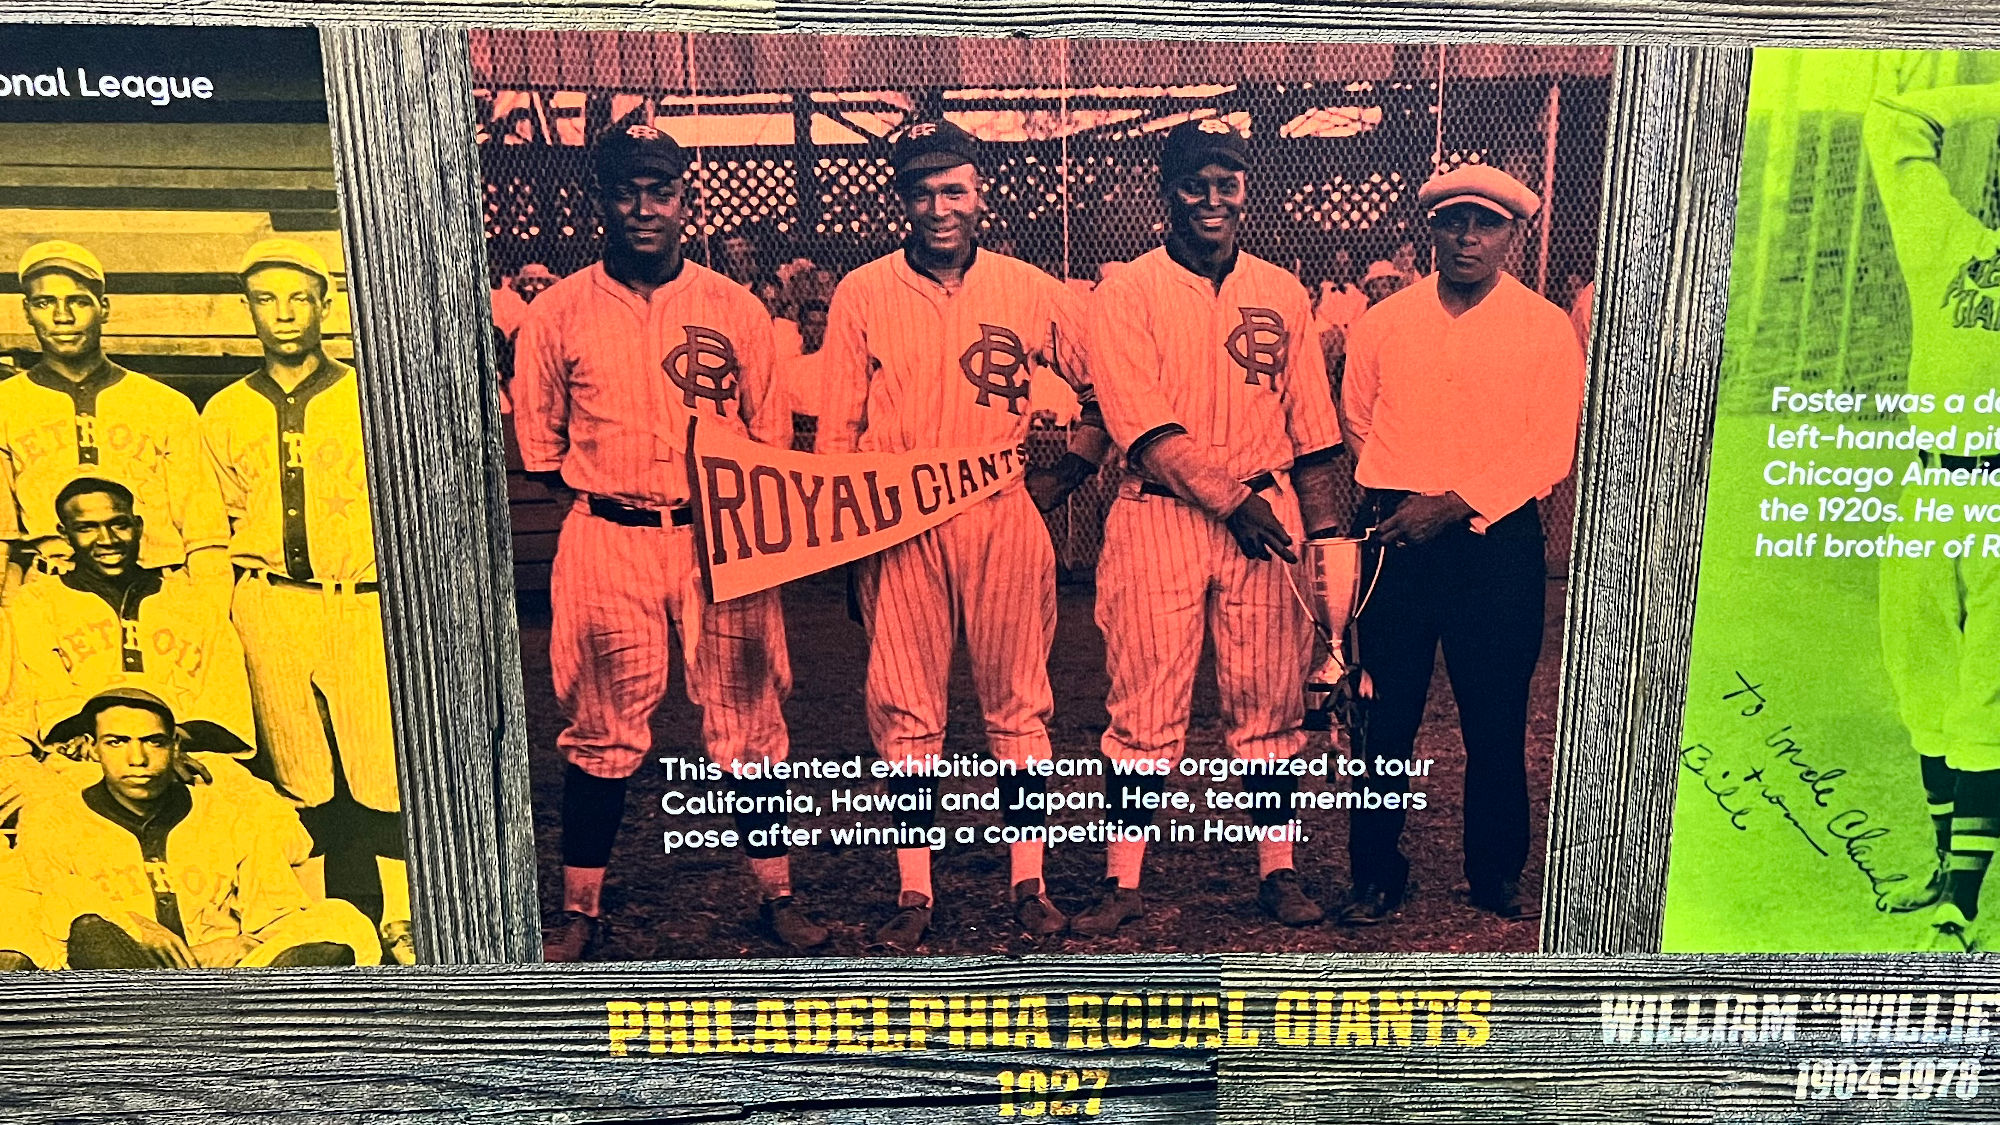 Negro Leagues Philadelphia Royal Giants